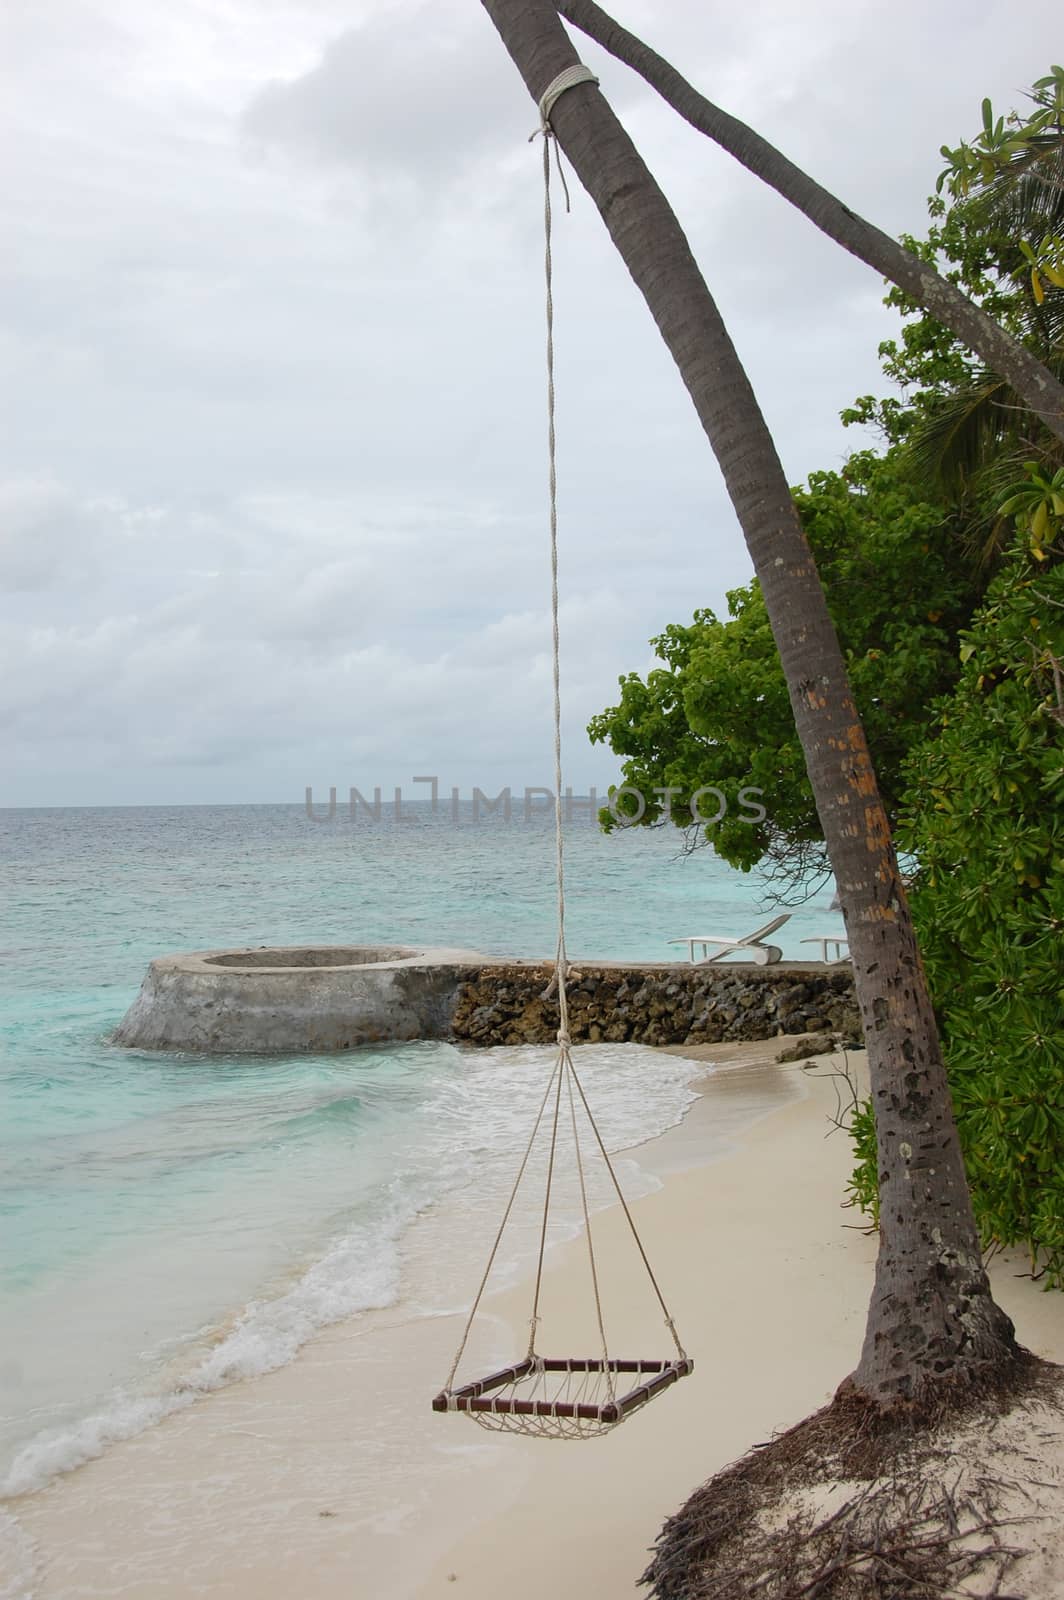 Hammock on rope at ocean beach, Maldives, Bandos Island